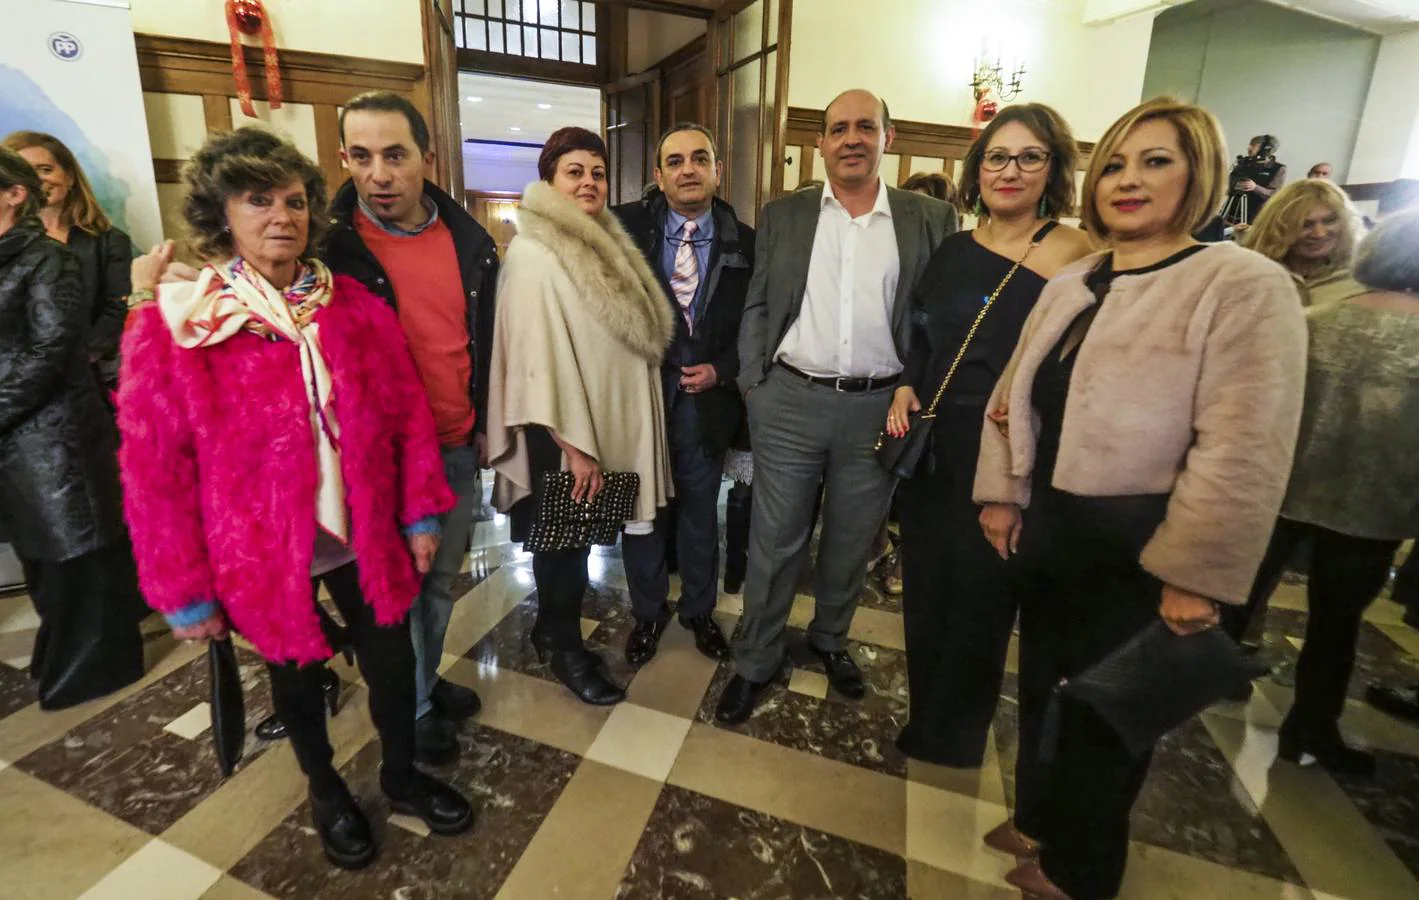 Carlota Salcines, Roberto García, Elena Cayón, Mario Avilés, Luis Villoslada, Jesusa Sánchez, Almudena Gutiérrez